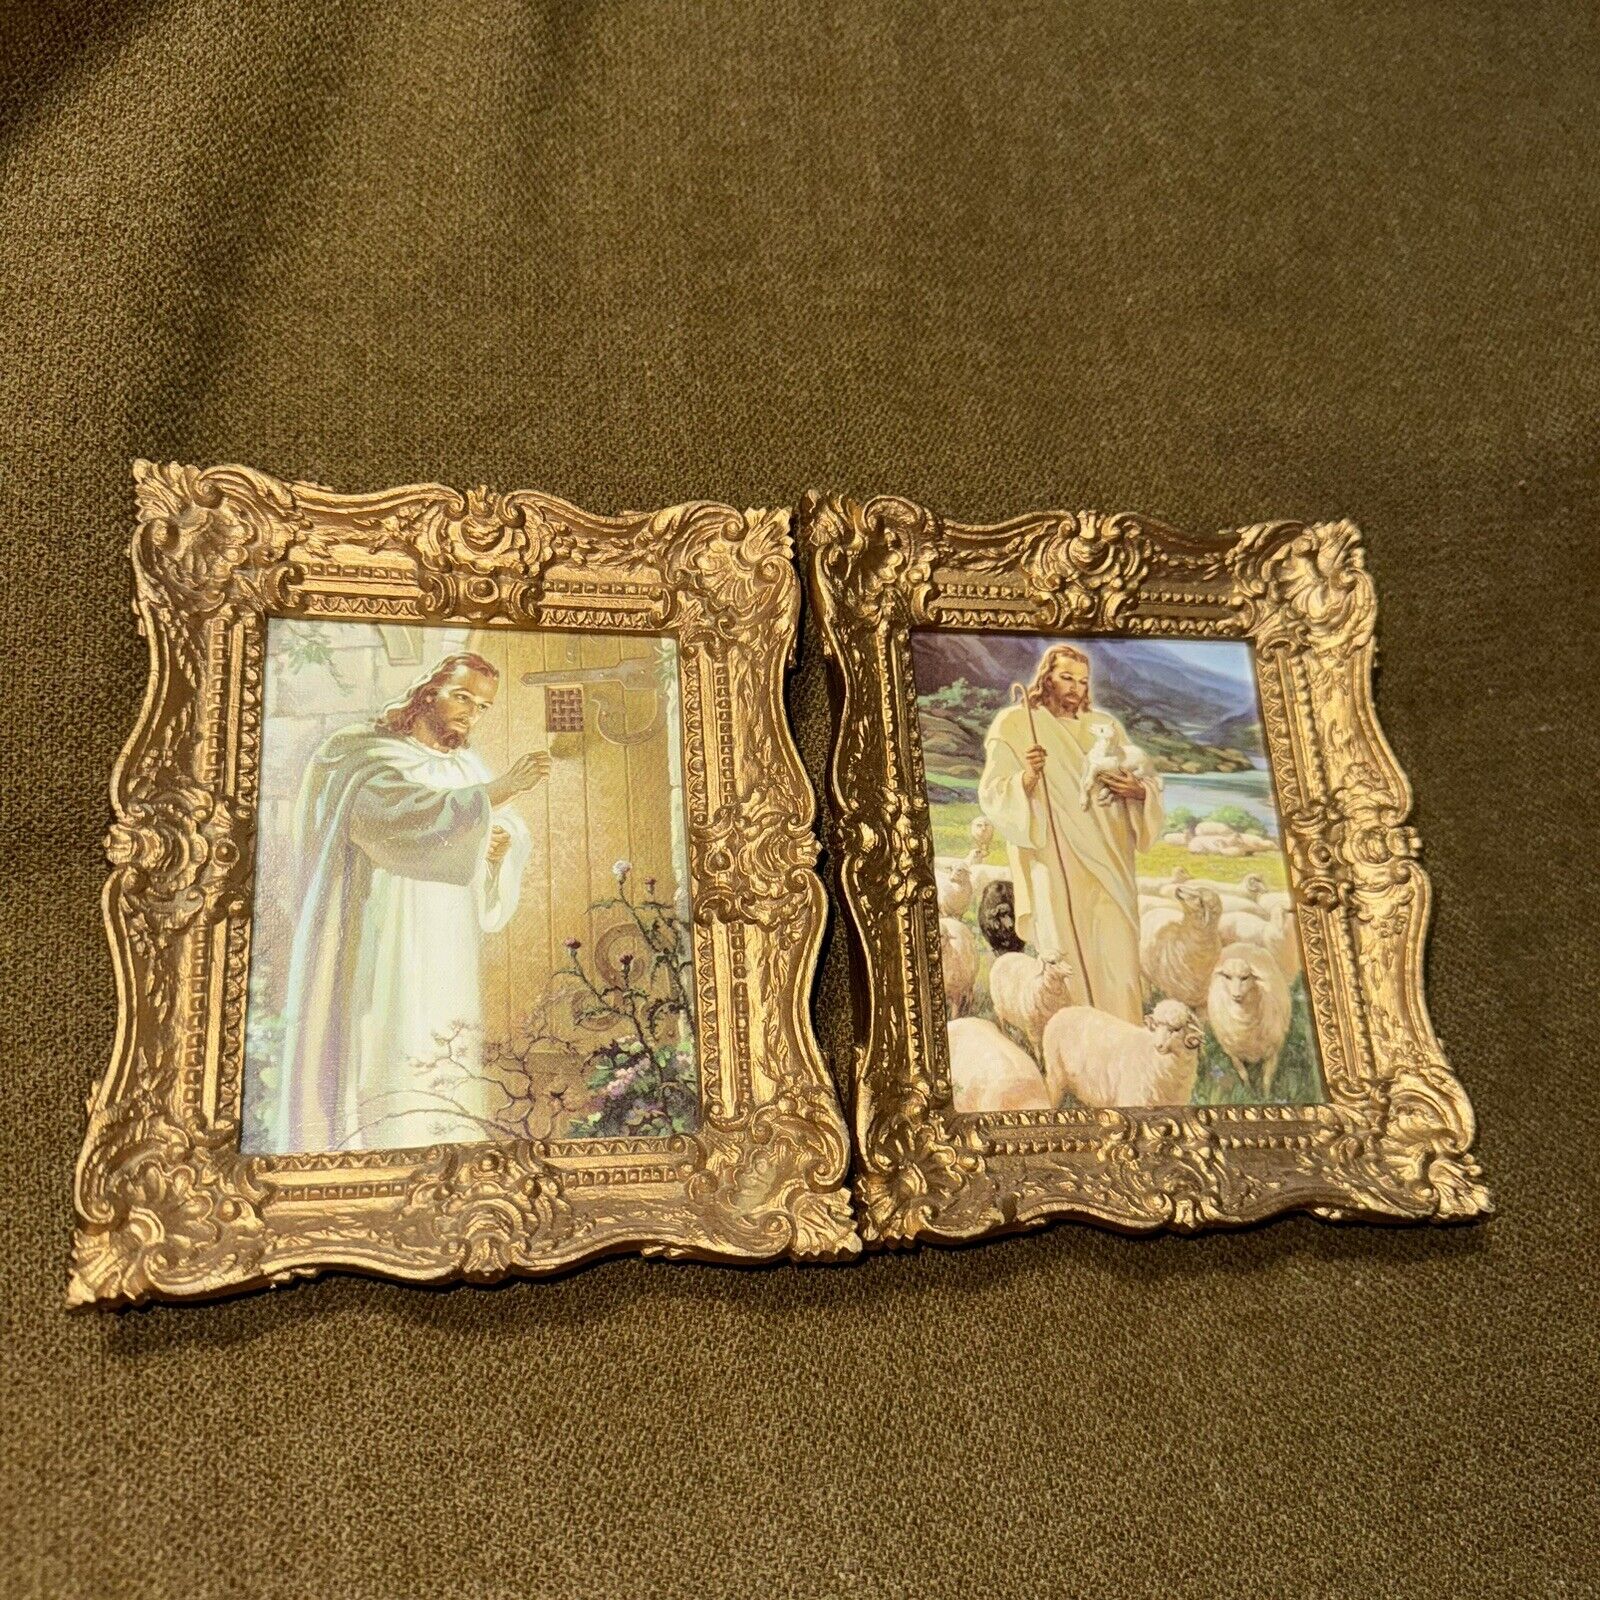 2 Jesus Christ Burwood Prod. Co. Prints 5.5 x 6.5 in Each. USA. Vintage, Frames